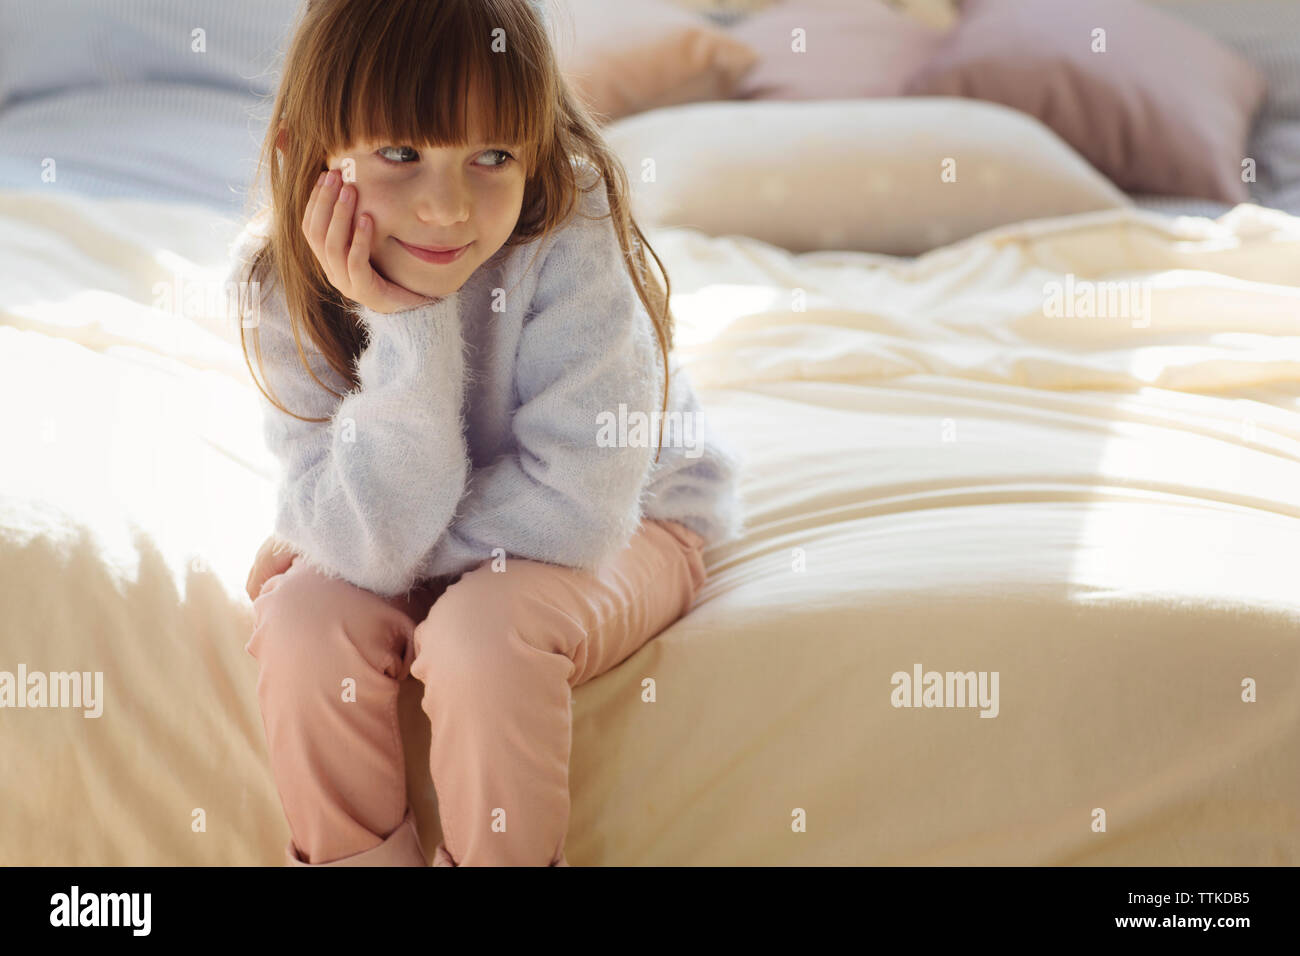 Premurosa ragazza seduta sul letto Foto Stock